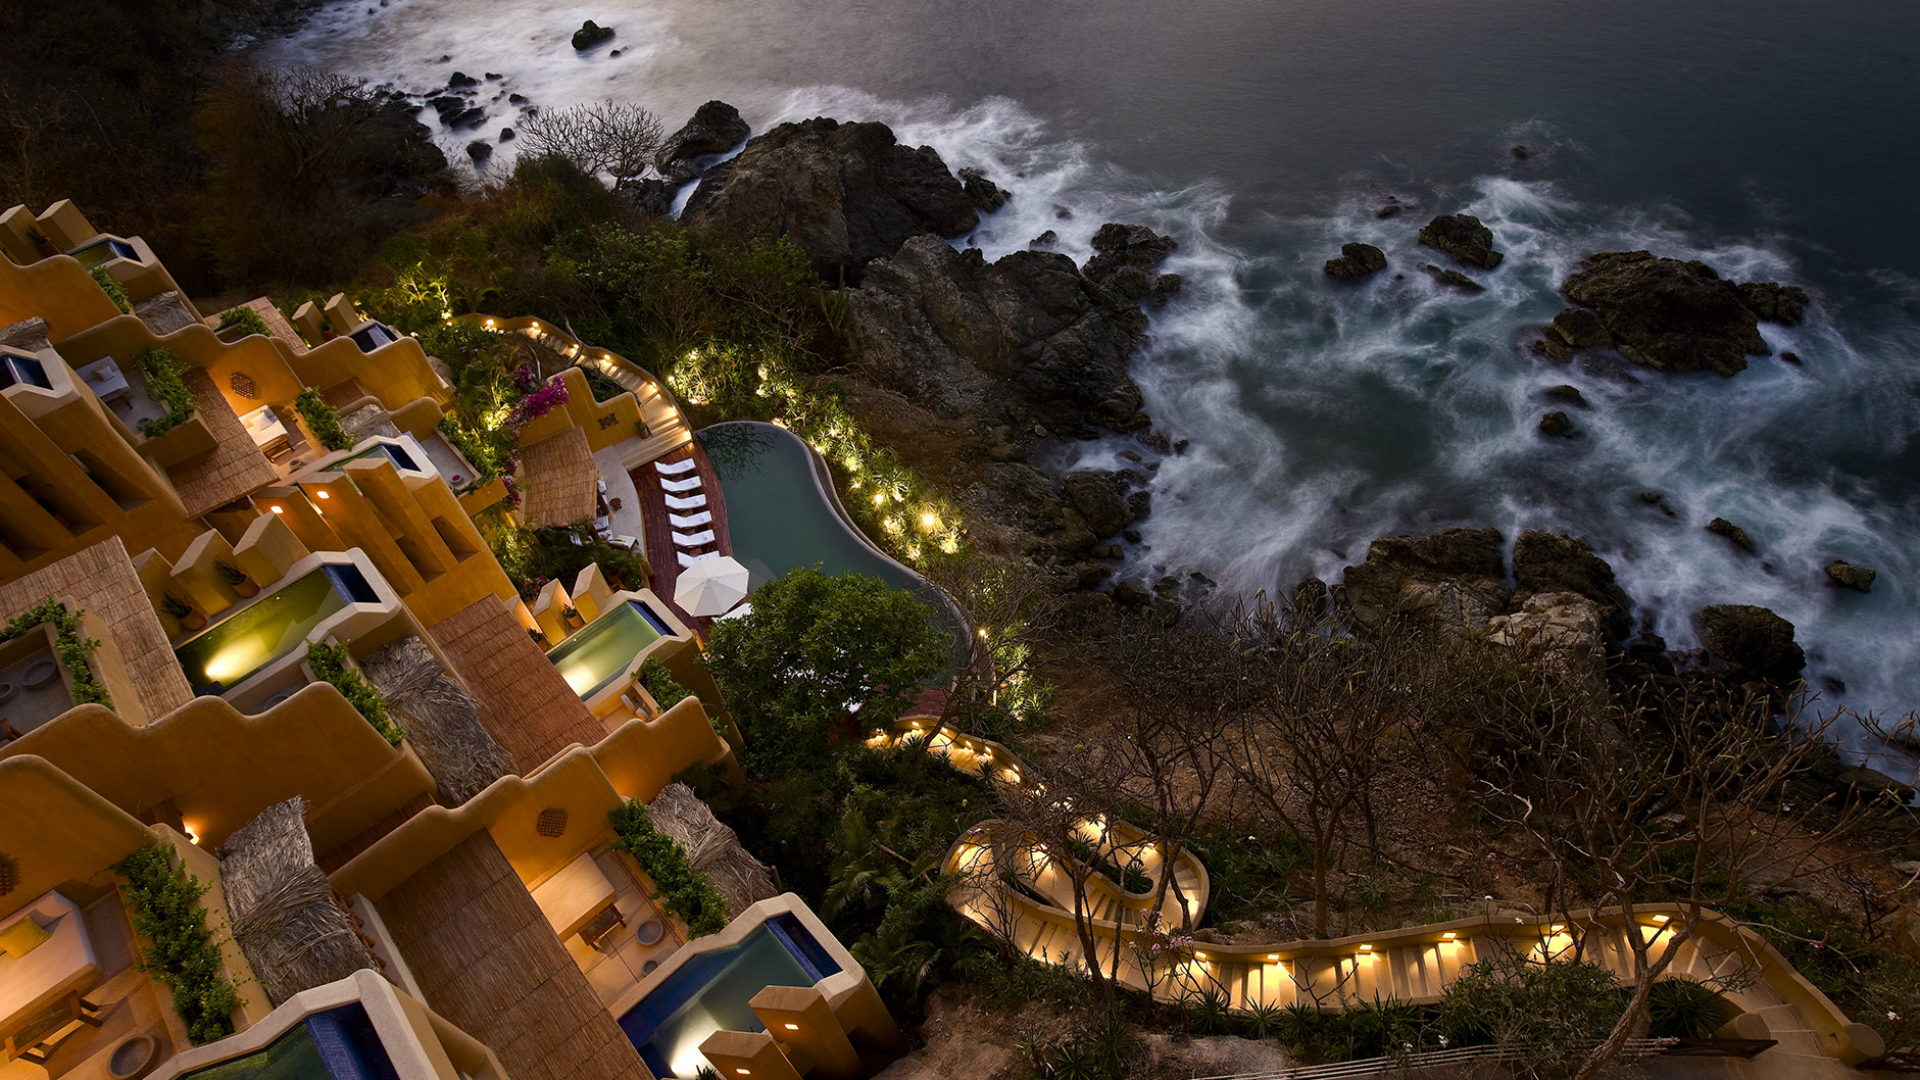 clifftop resort at night overlooking rocky ocean edge